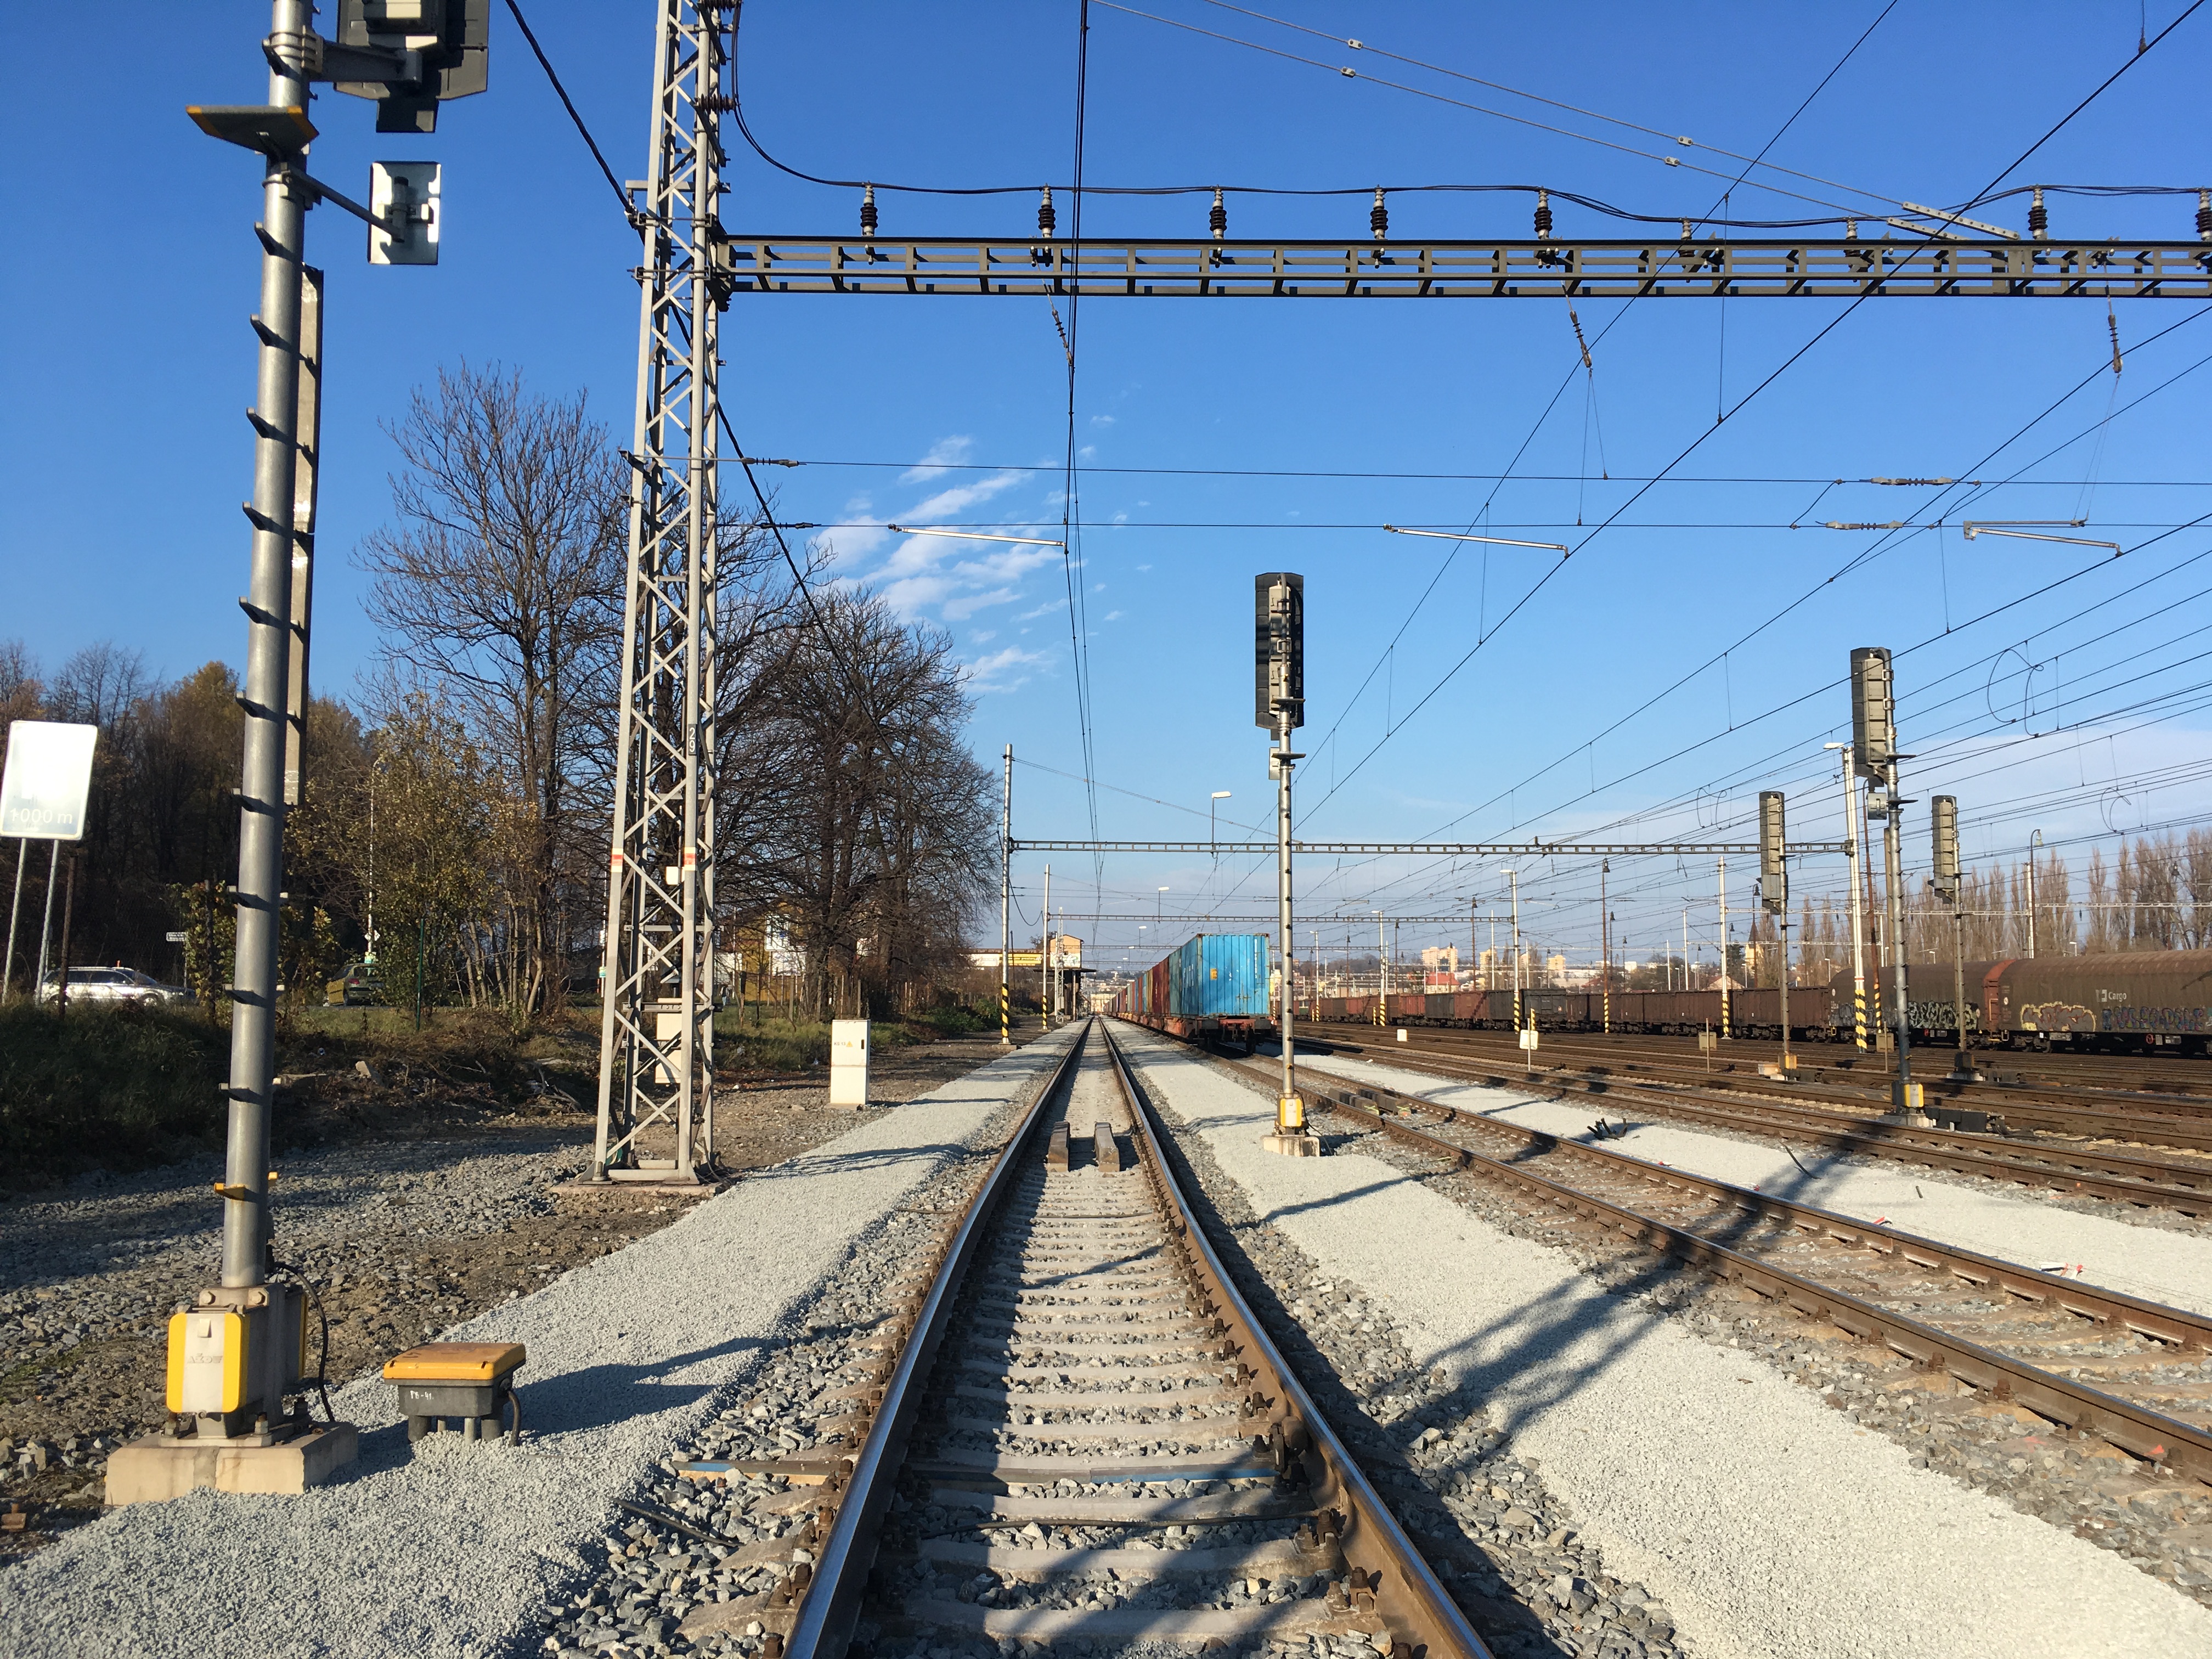 Oprava kolejí v žel. stanici Český Těšín  - Spoorwegbouw